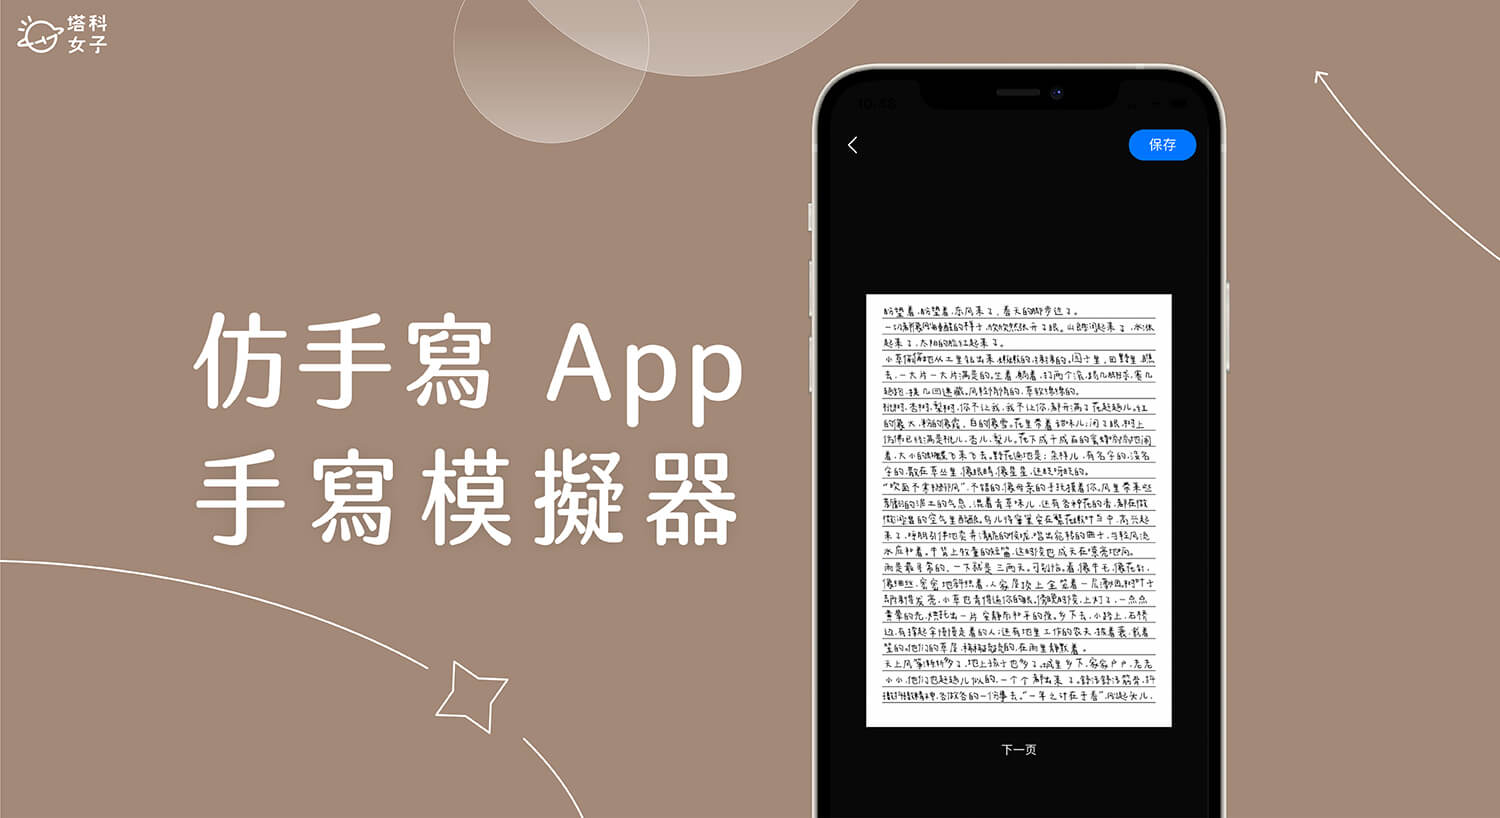 仿手寫 App《手寫模擬器》輸入文字一鍵產生中文手寫字體筆跡